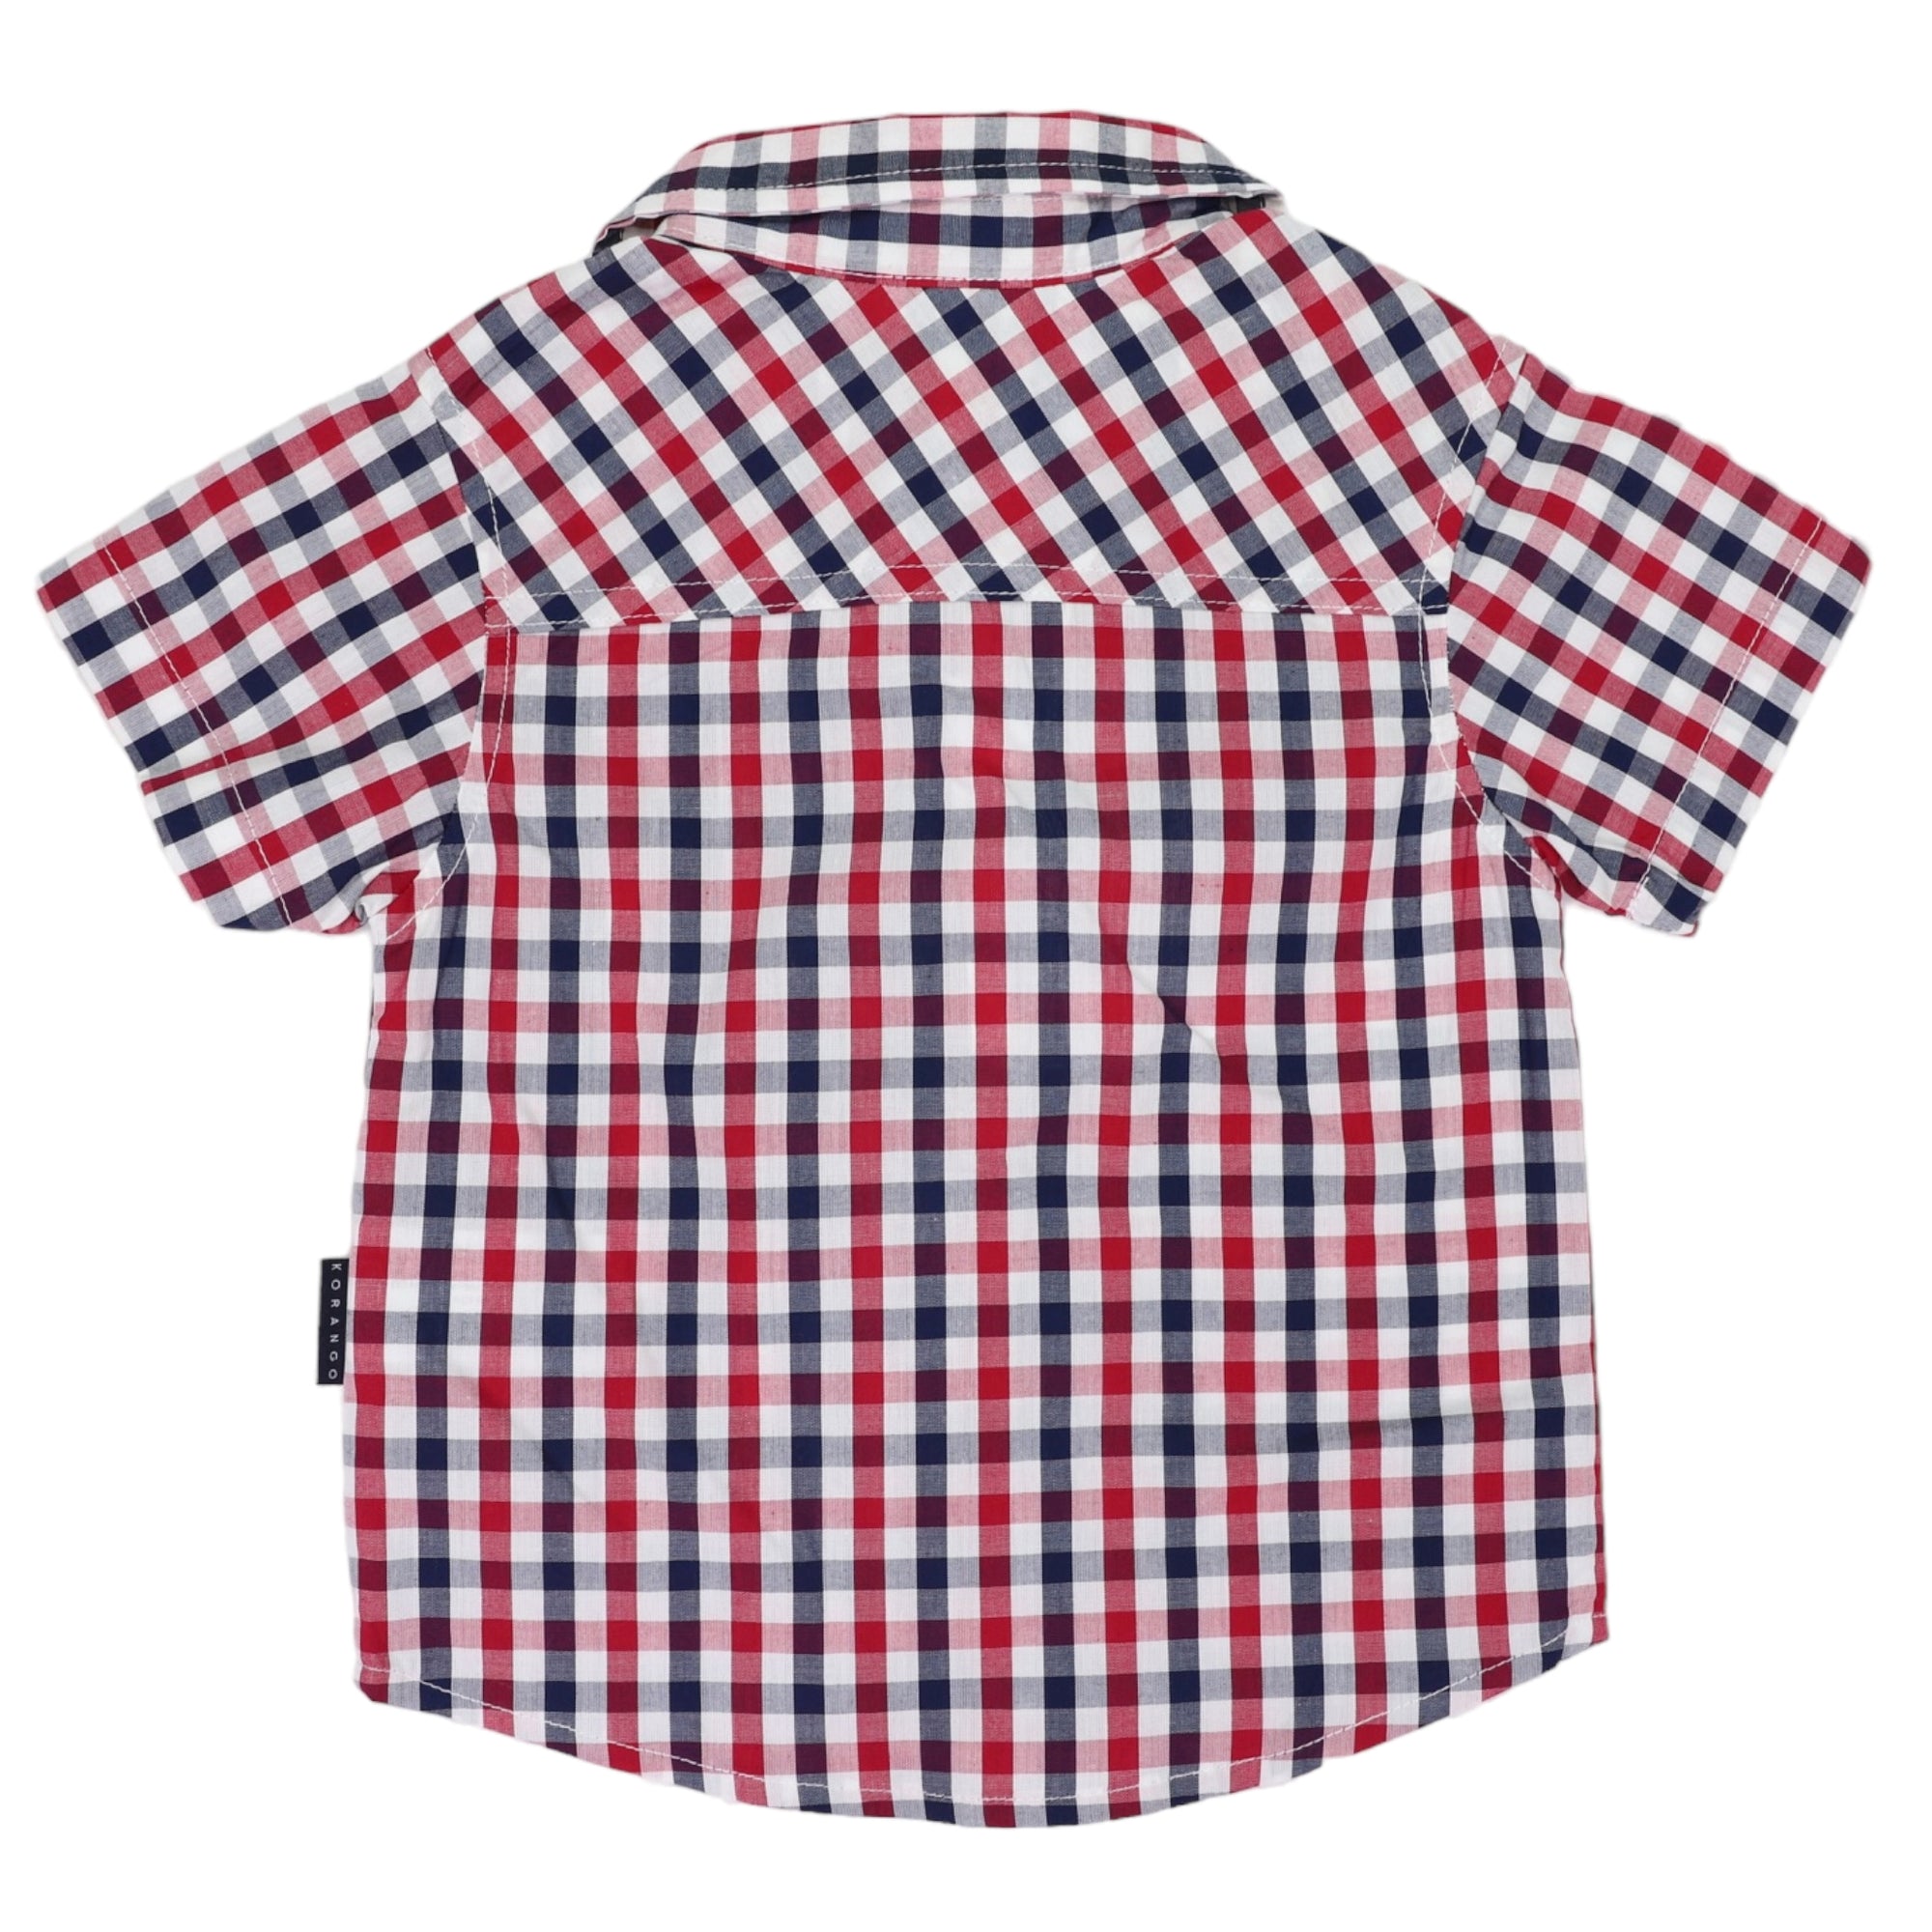 Korango Short Sleeved Shirt Red Check